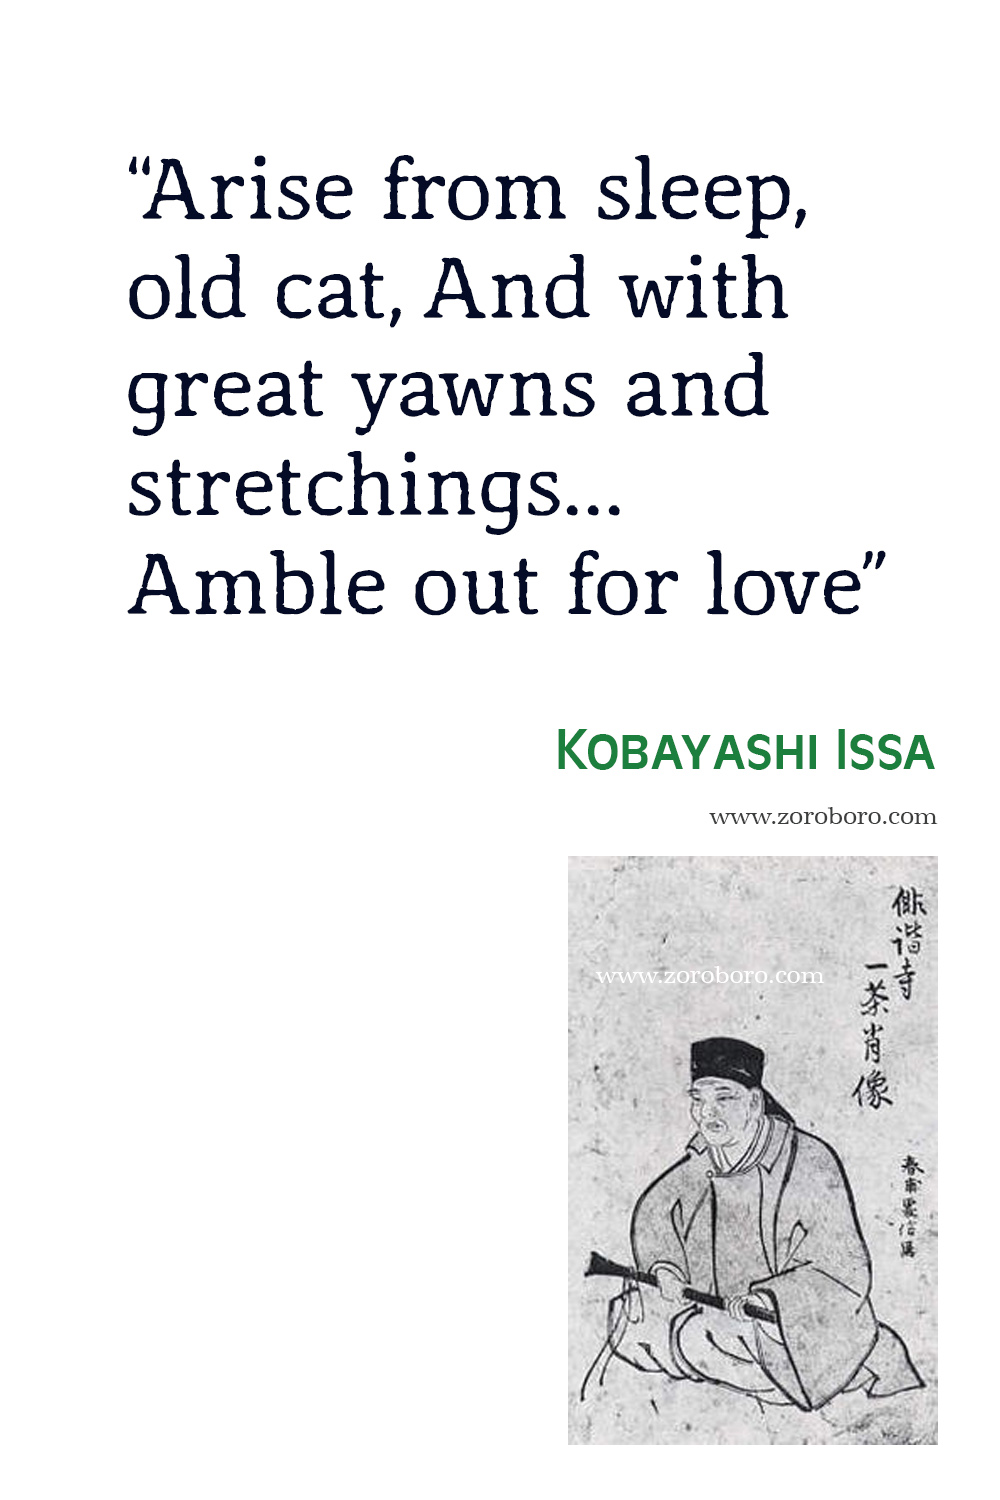 Kobayashi Issa Quotes. Kobayashi Issa Poems, Kobayashi Issa Poetry, Kobayashi Issa Books, Kobayashi Issa Famous haiku, Kobayashi Issa Haiku Poems